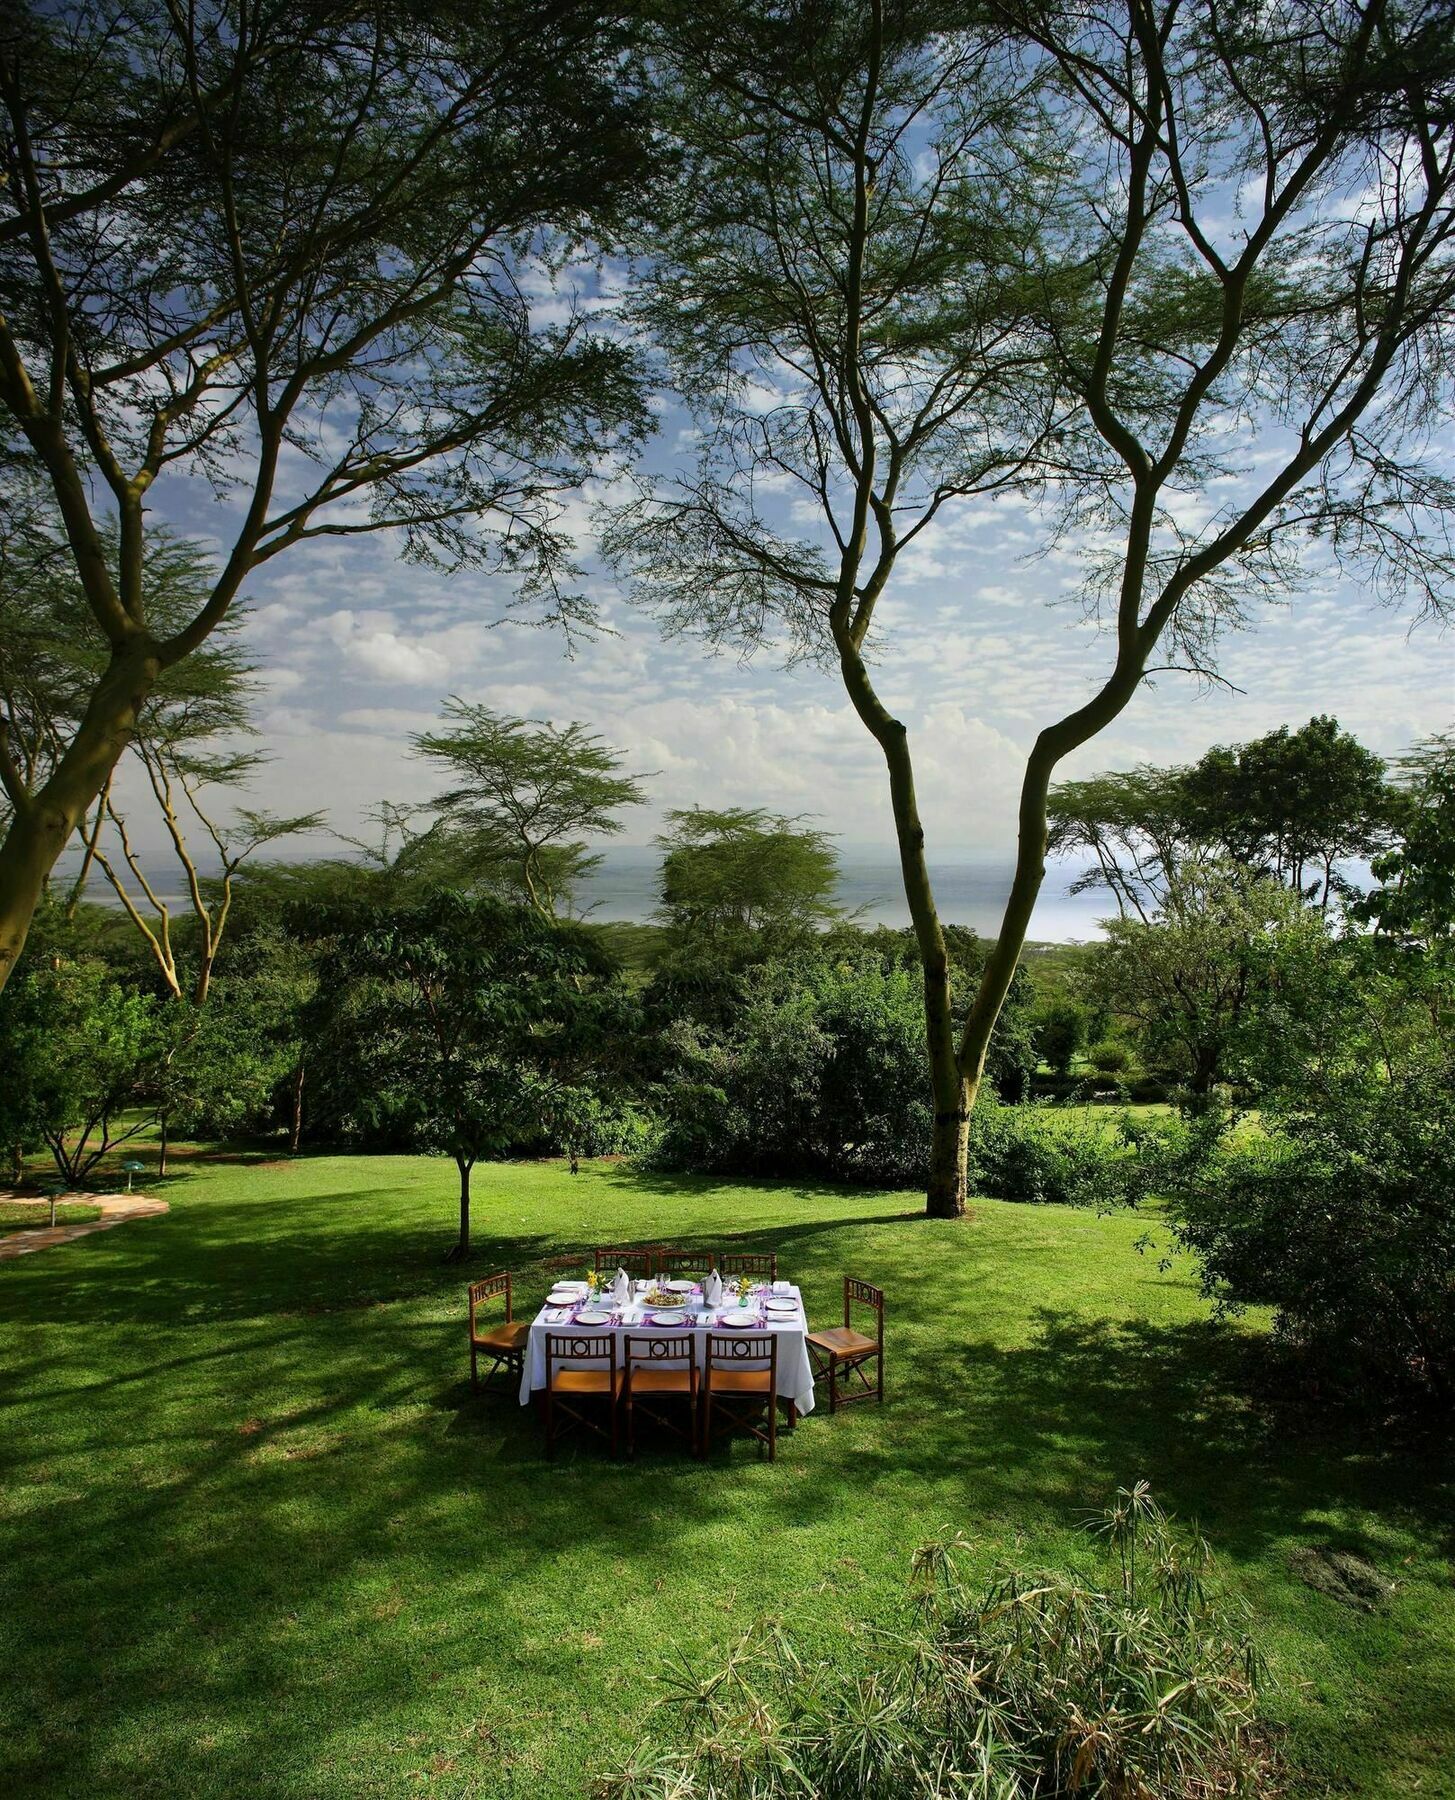 Sarova Lion Hill Game Lodge Nakuru Kültér fotó